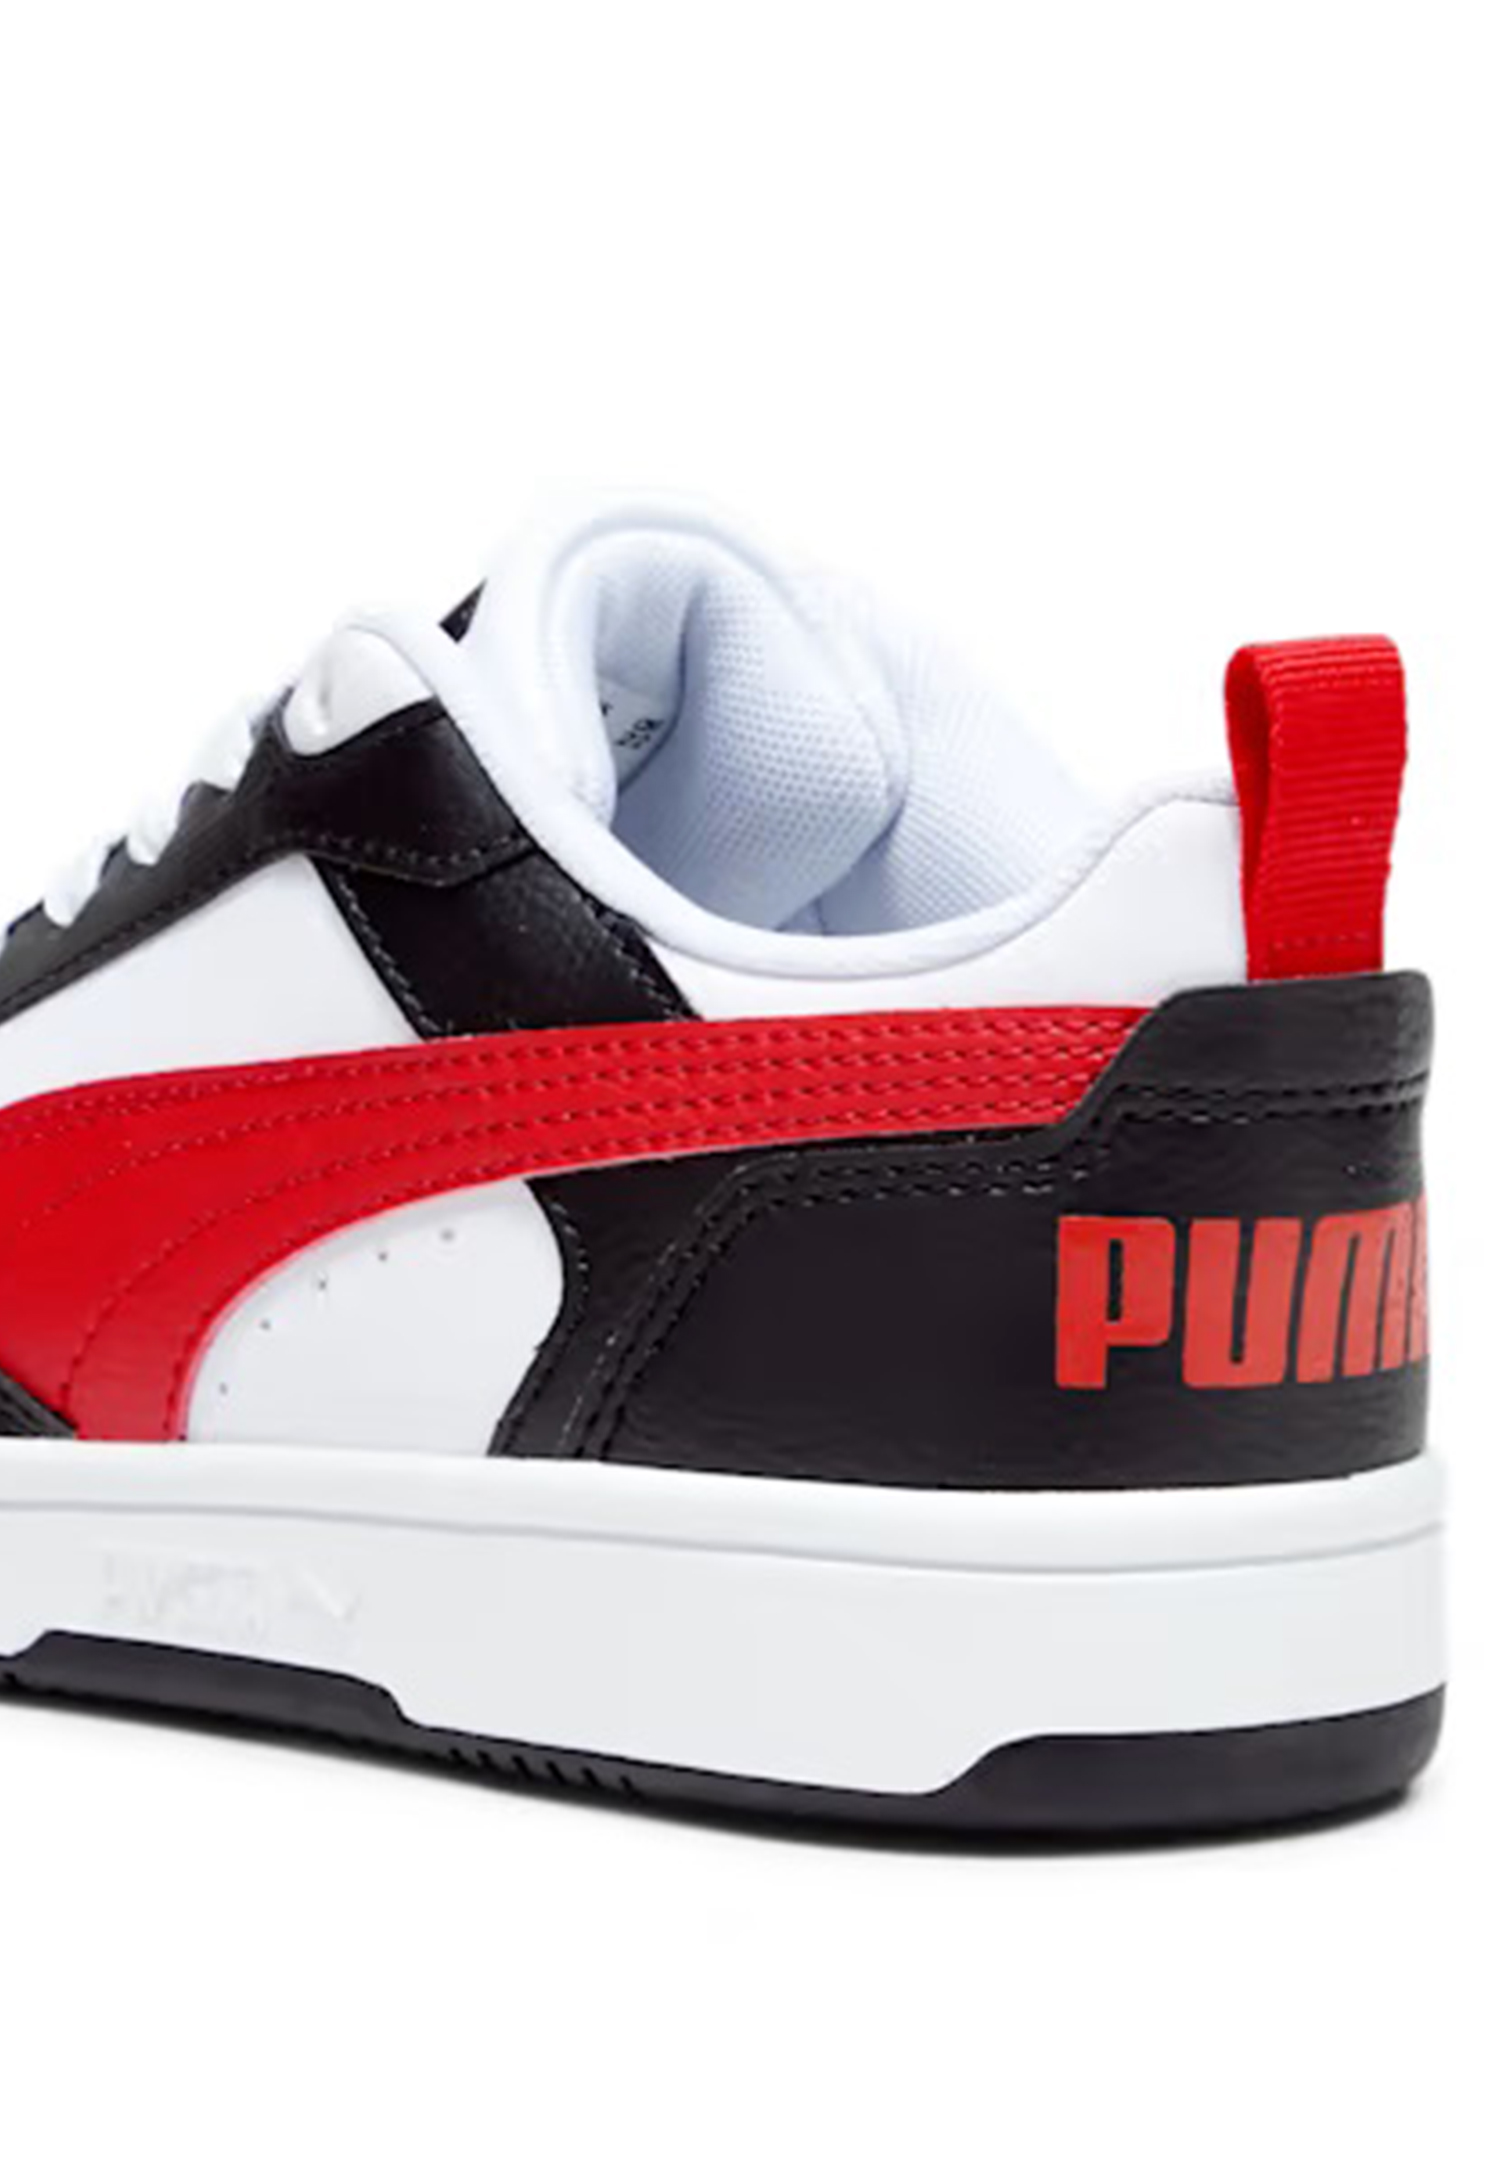 Puma Rebound V6 LOW JR Unisex Kinder Sneaker 393833 04